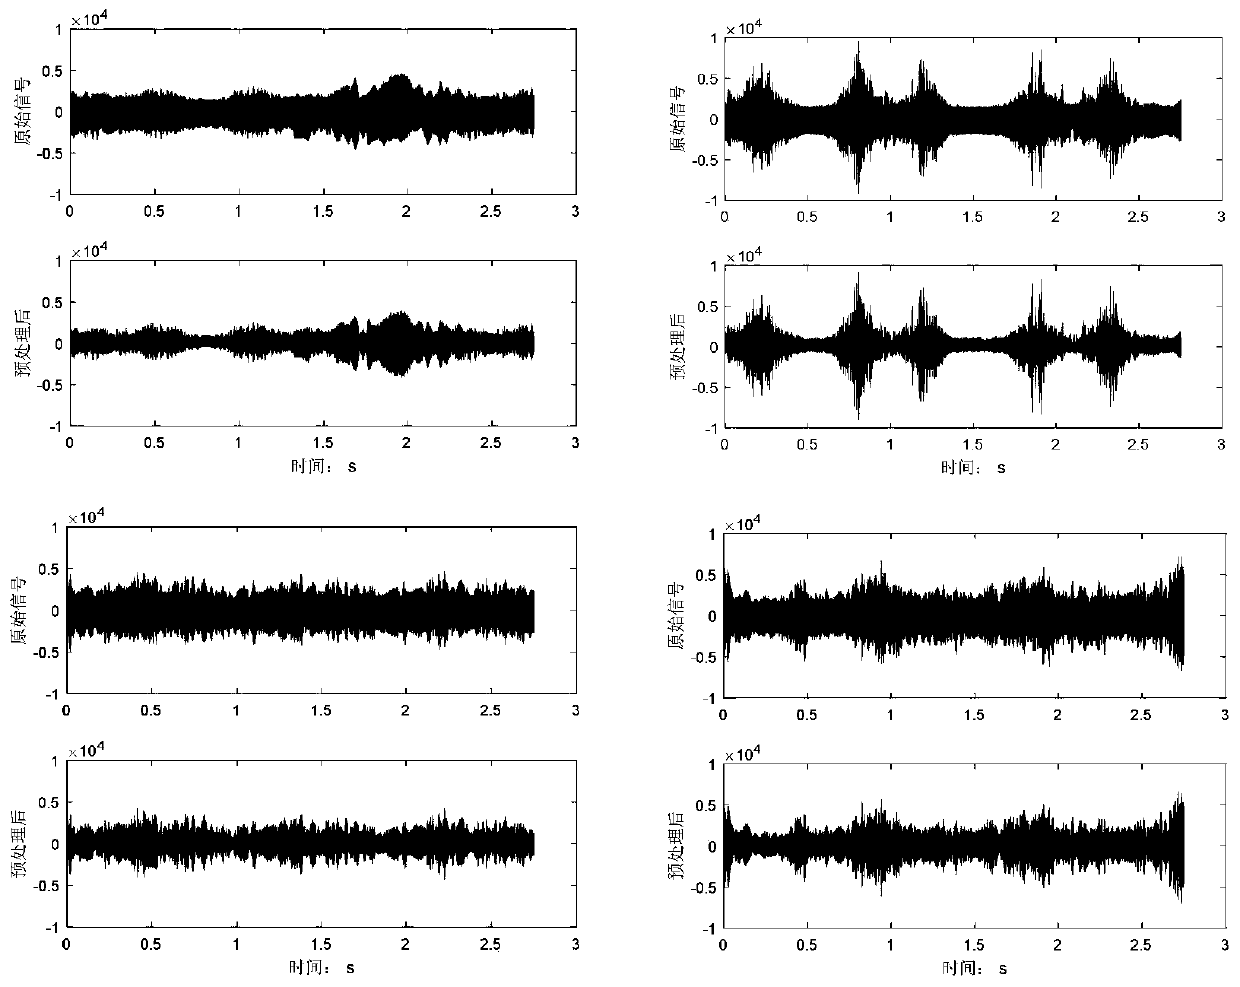 Gesture recognition method based on 77GHz millimeter wave radar signals